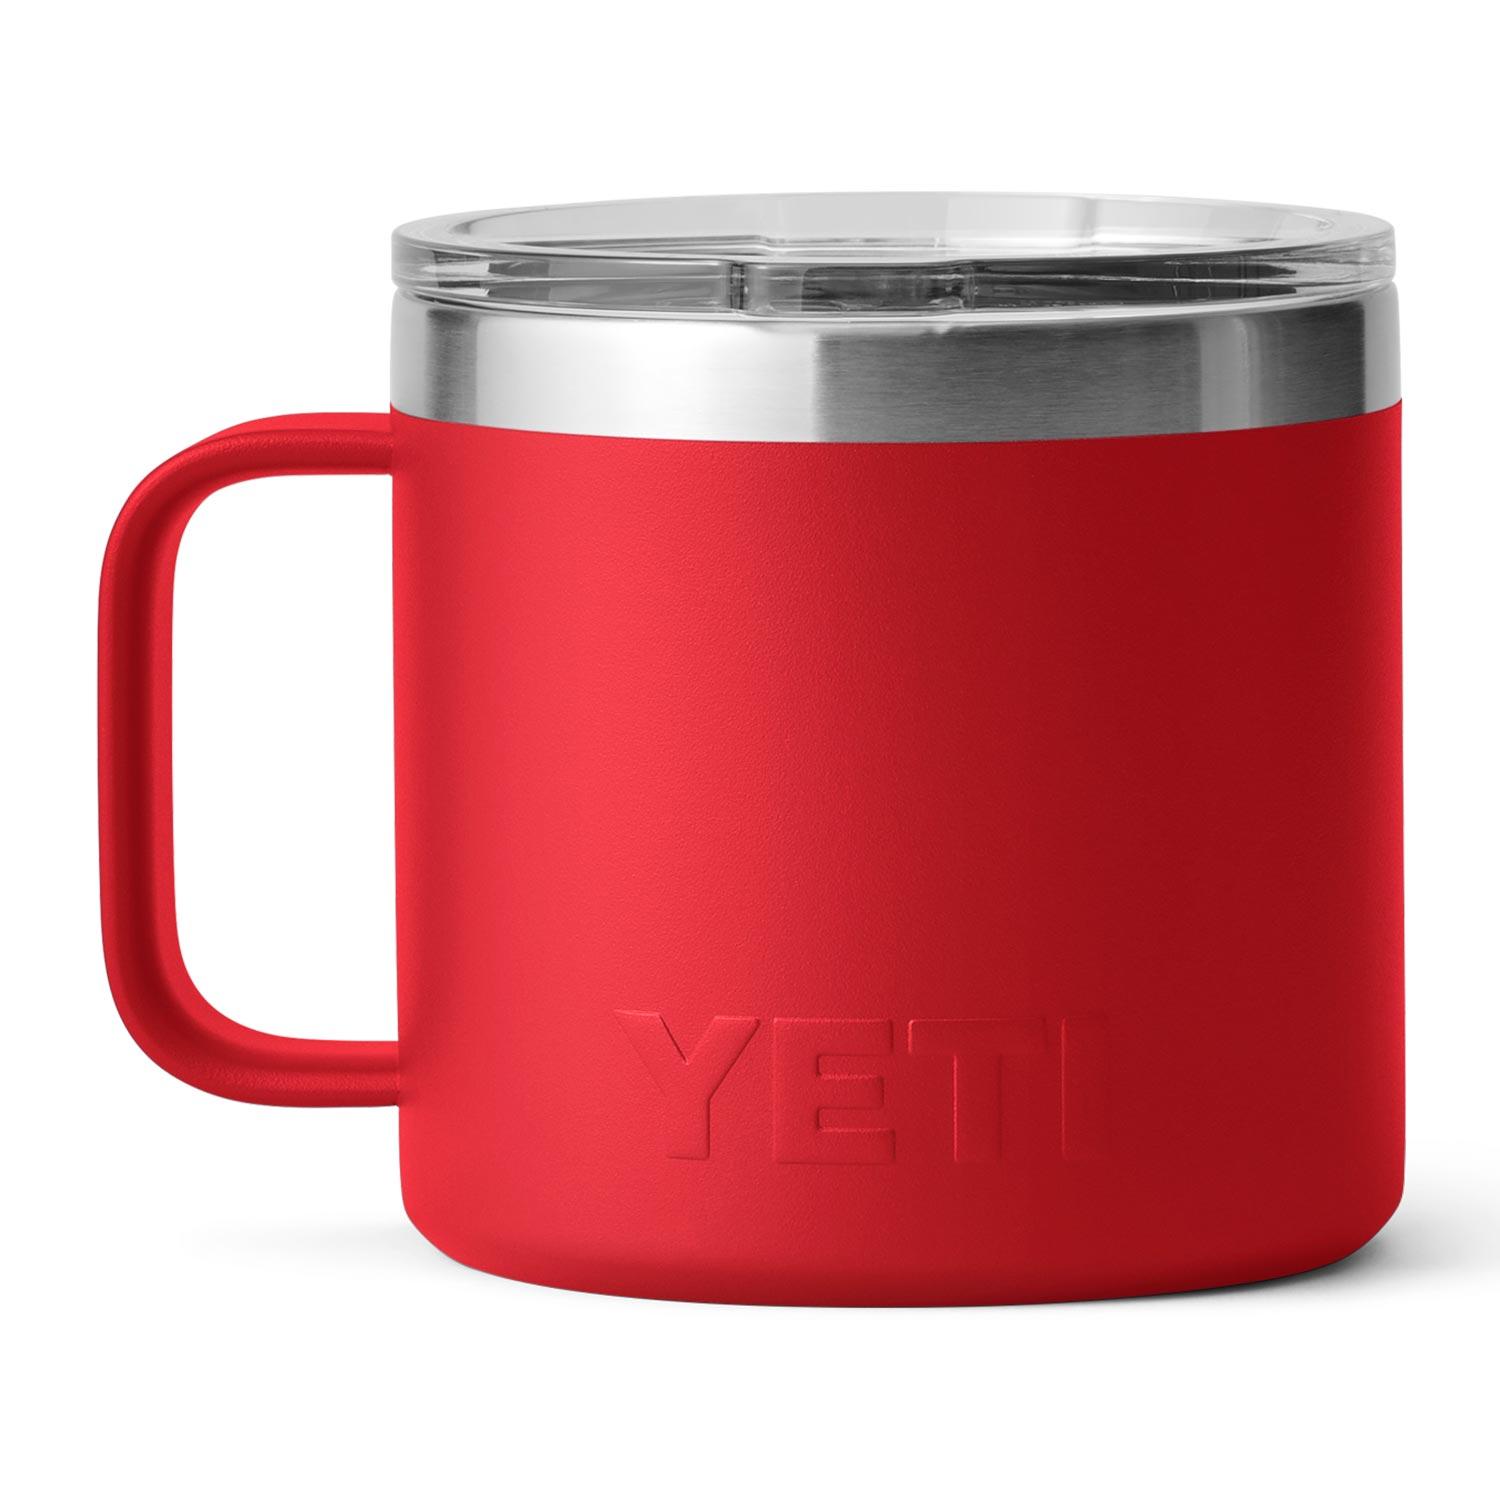 YETI Rambler 14 oz Rescue Red BPA Free Mug with MagSlider Lid